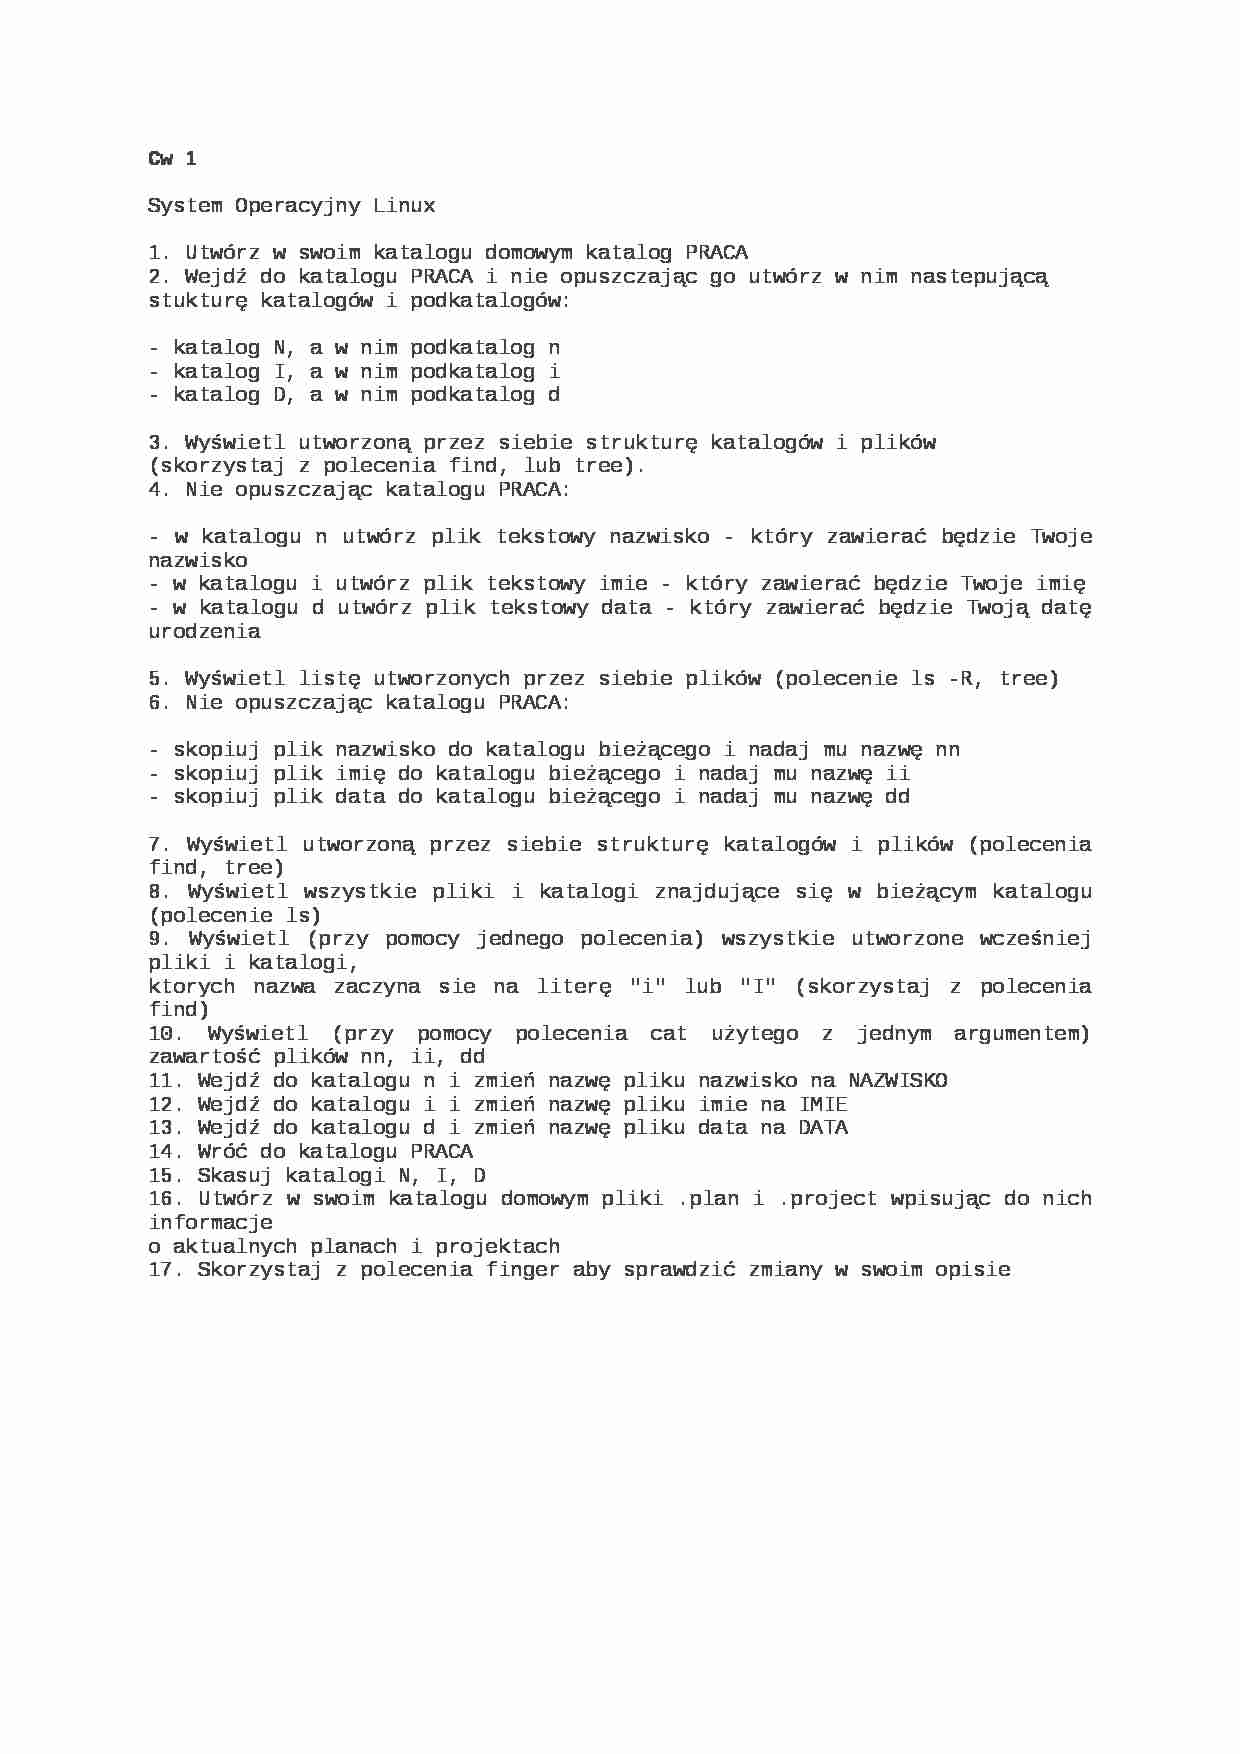 informatyka - zadania z linuxa - strona 1